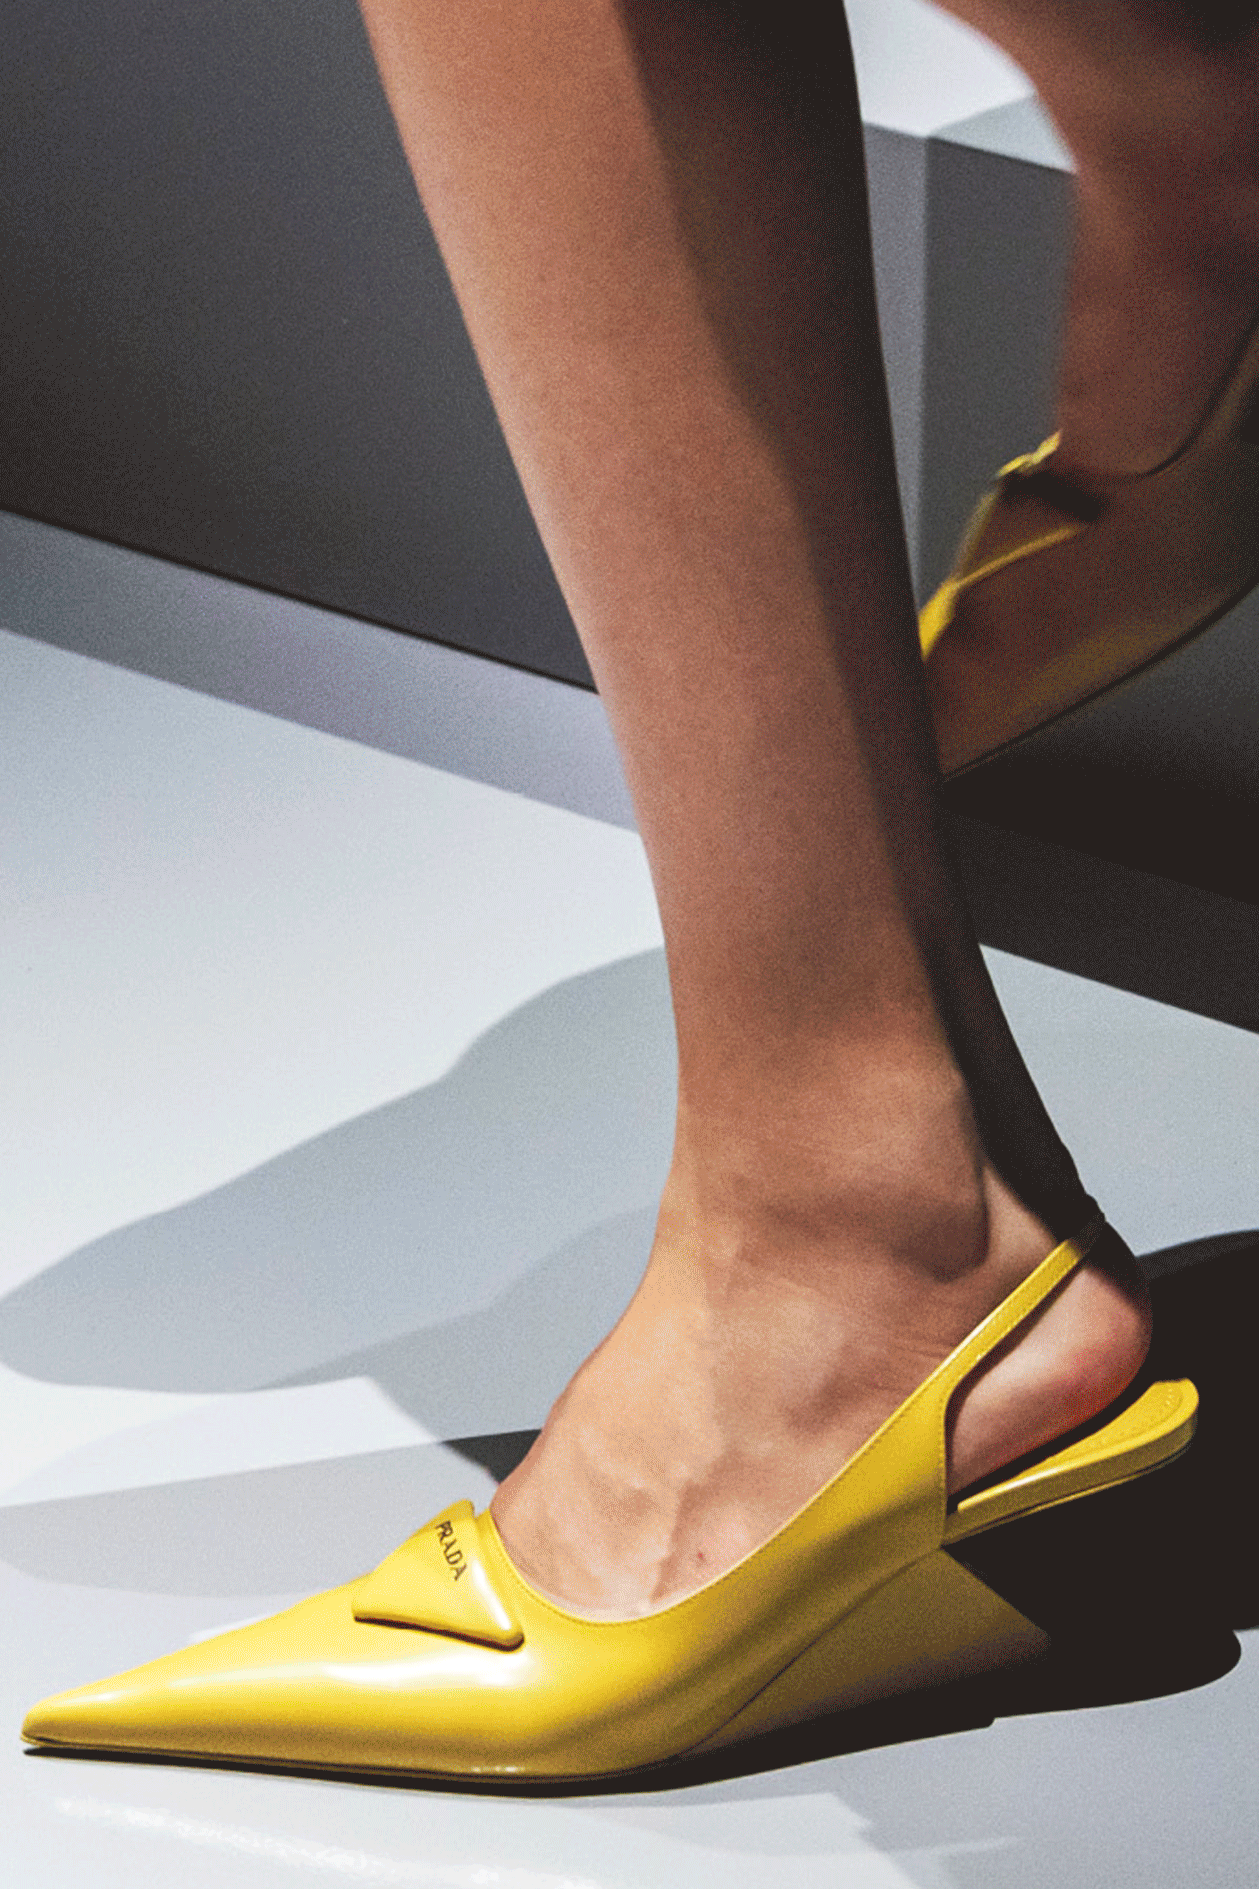 Prada весналето 2022 еще одни туфли Миуччи Прады и Рафа Симонса вдохновленные моделью 1998 года